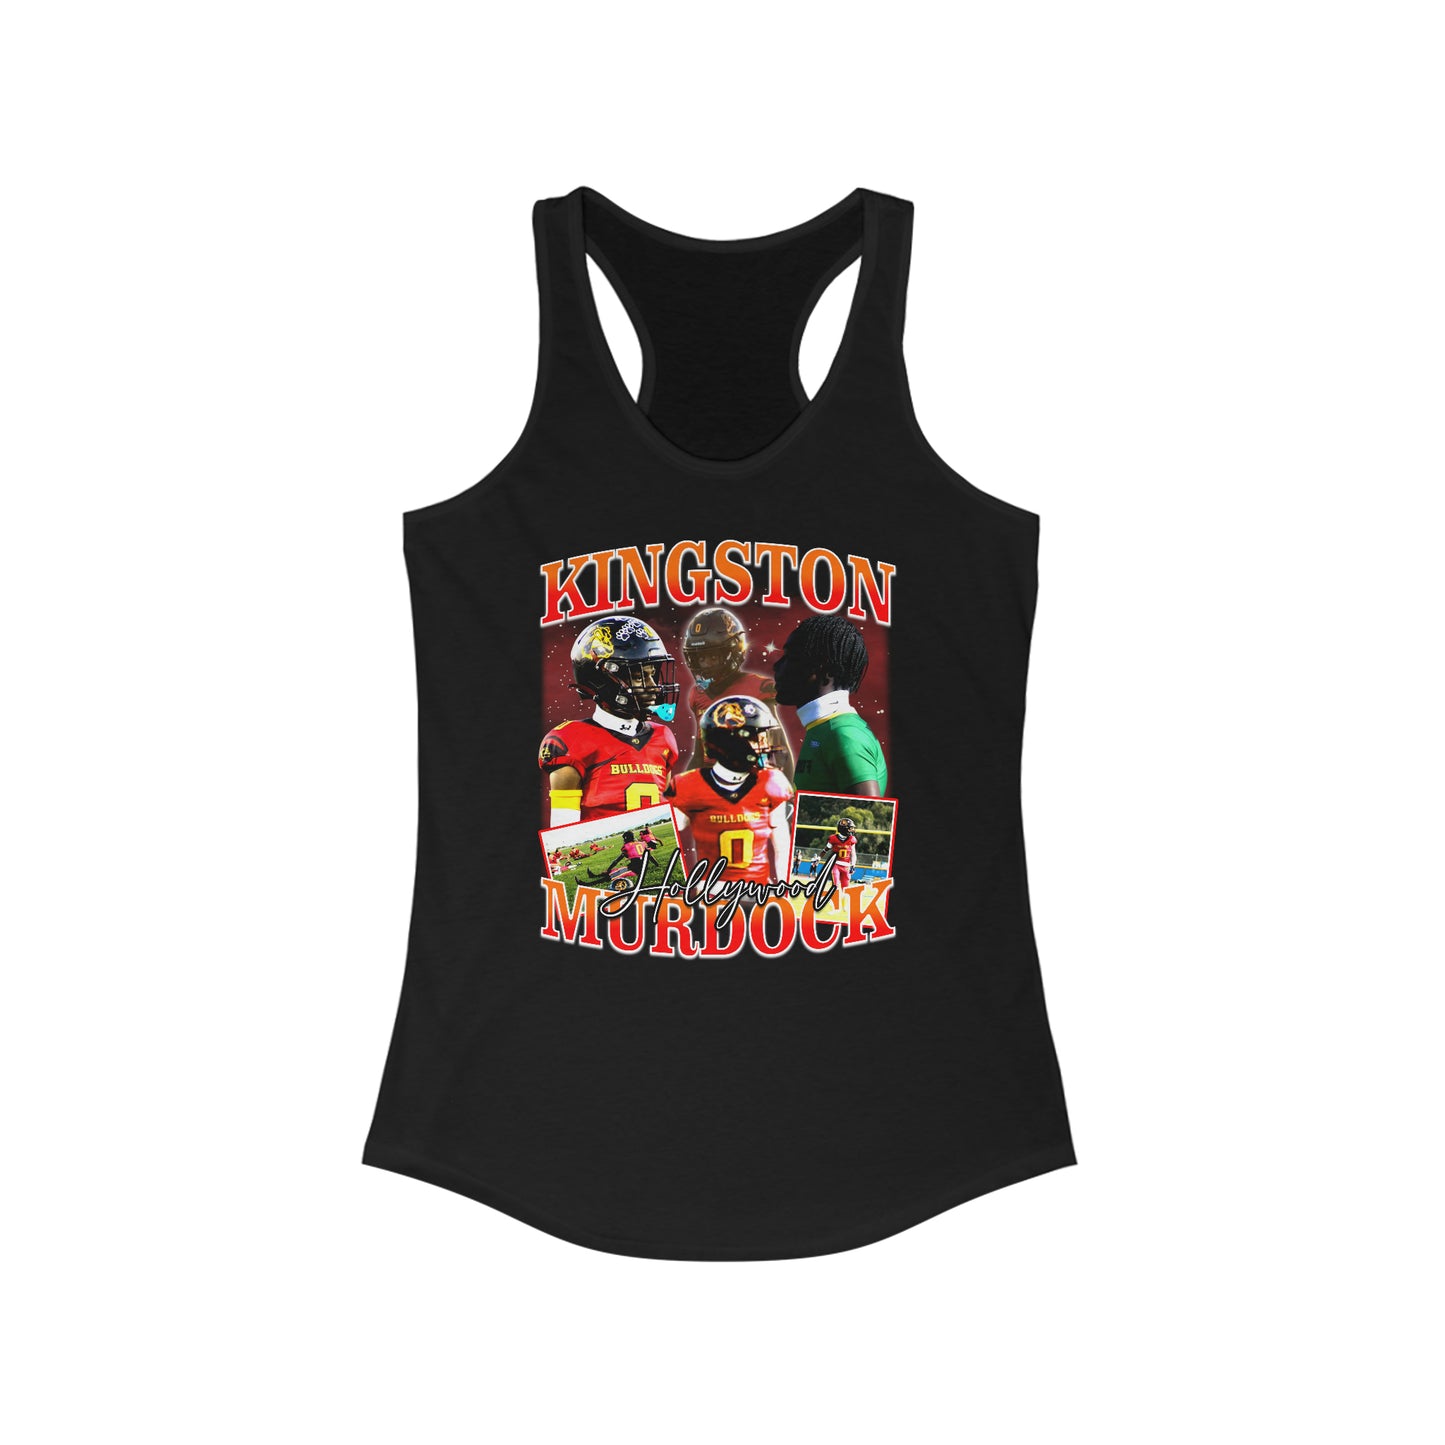 Kingston Murdock Women's Tank Top